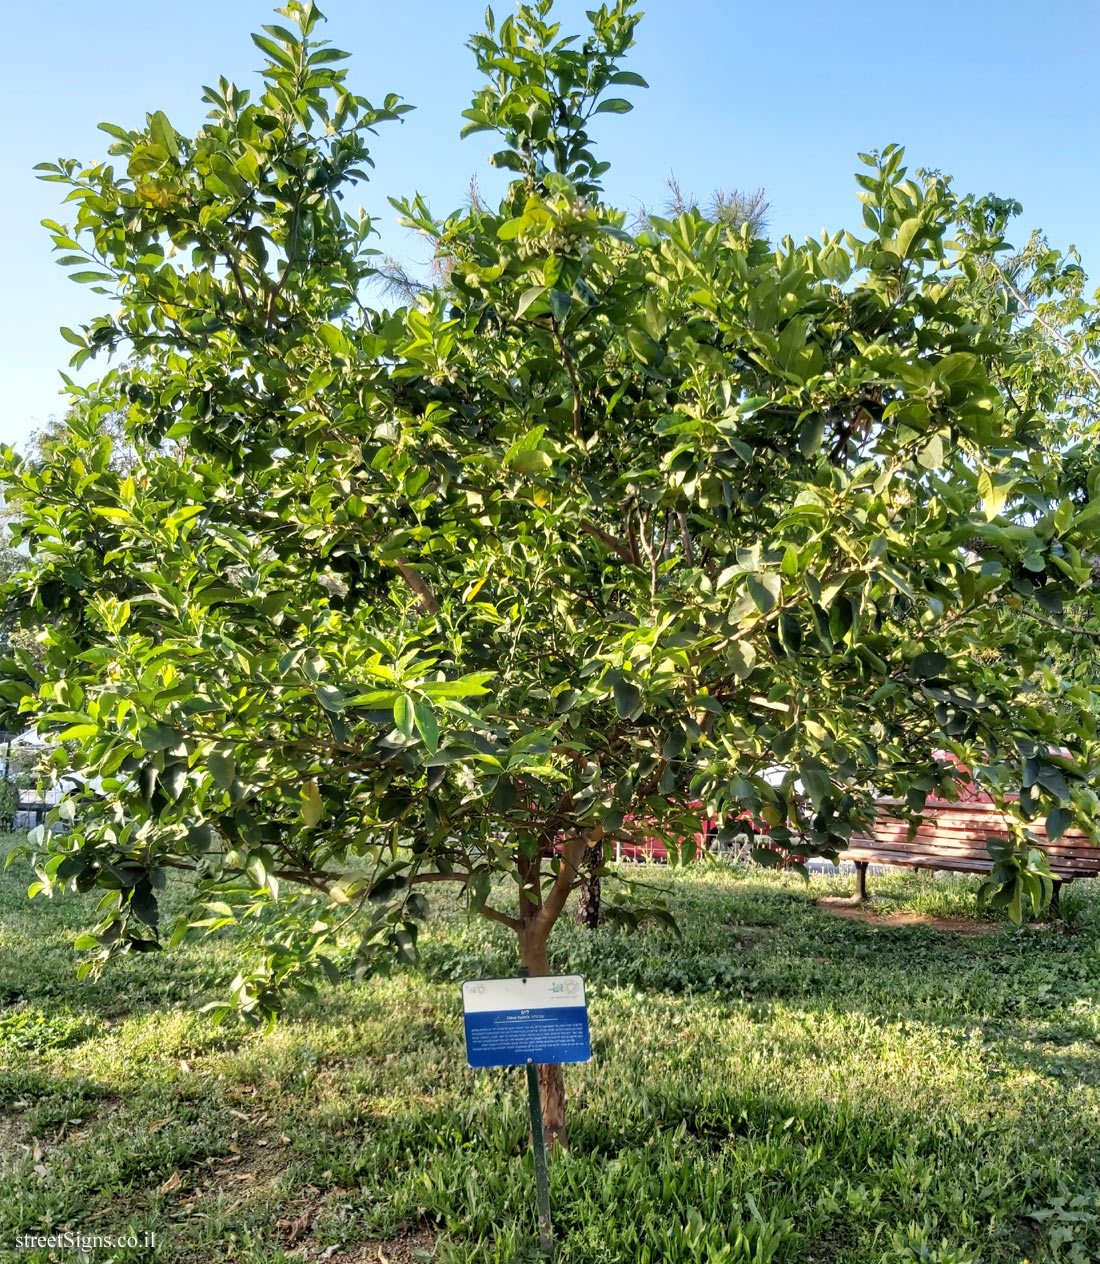 Tel Aviv Orchard - Lime - Bnei Dan St 8, Tel Aviv-Yafo, Israel